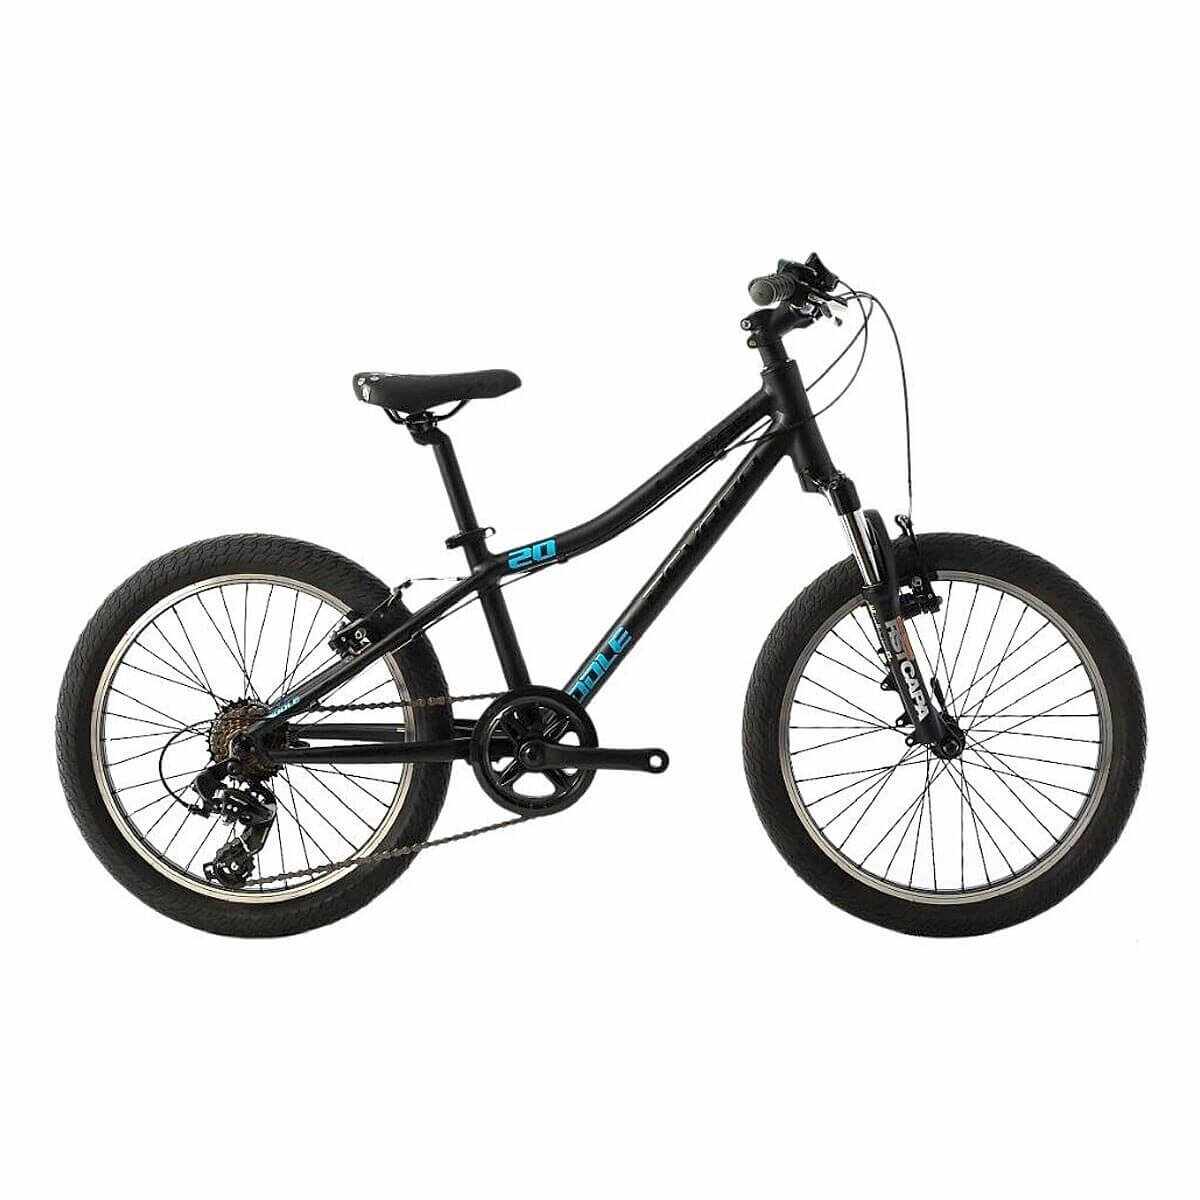 Bicicleta Copii Devron Riddle K2.2 2019 - 20 Inch, Negru